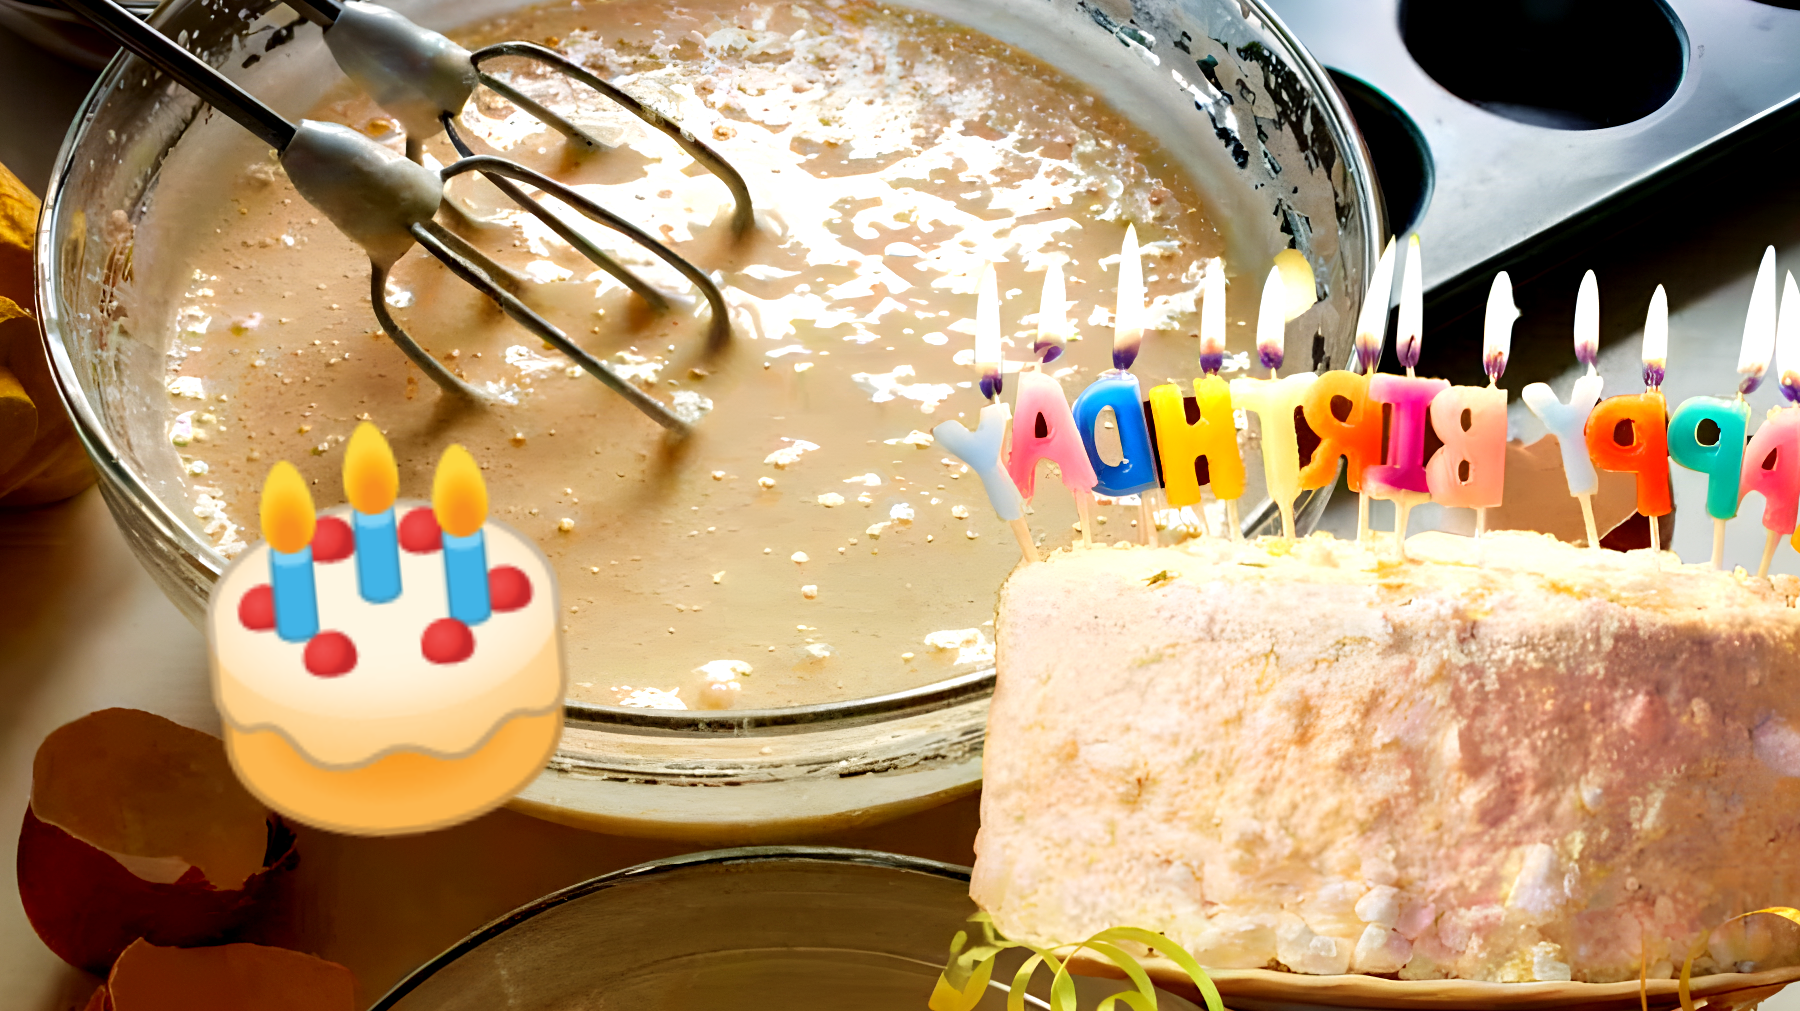 Scopri il segreto per fare la torta di compleanno perfetta con solo 4 uova e un po' di farina